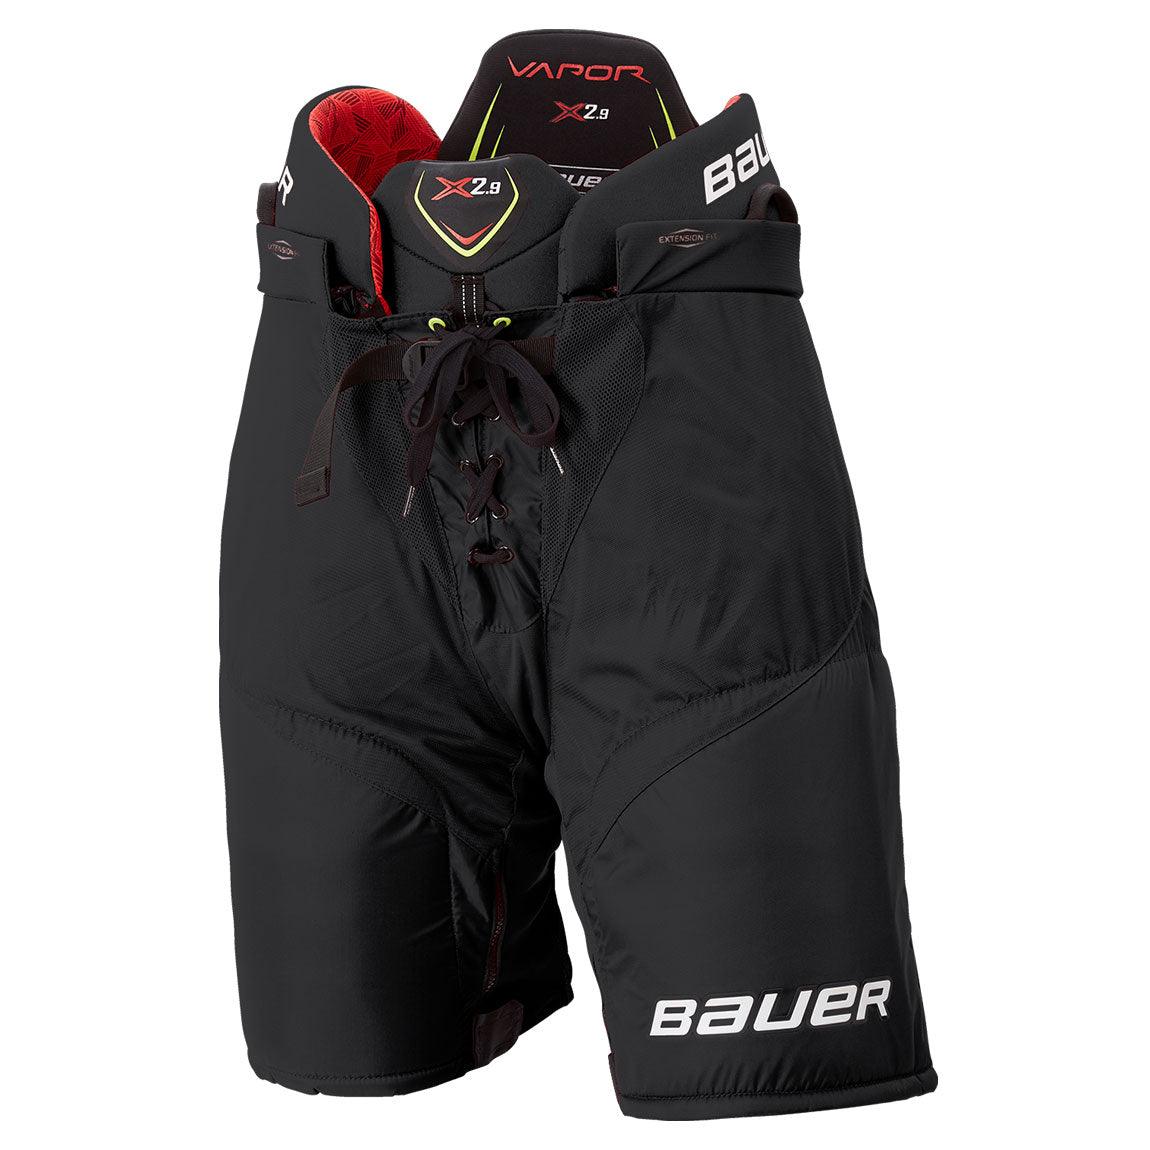 Vapor X2.9 Hockey Pants - Senior - Sports Excellence